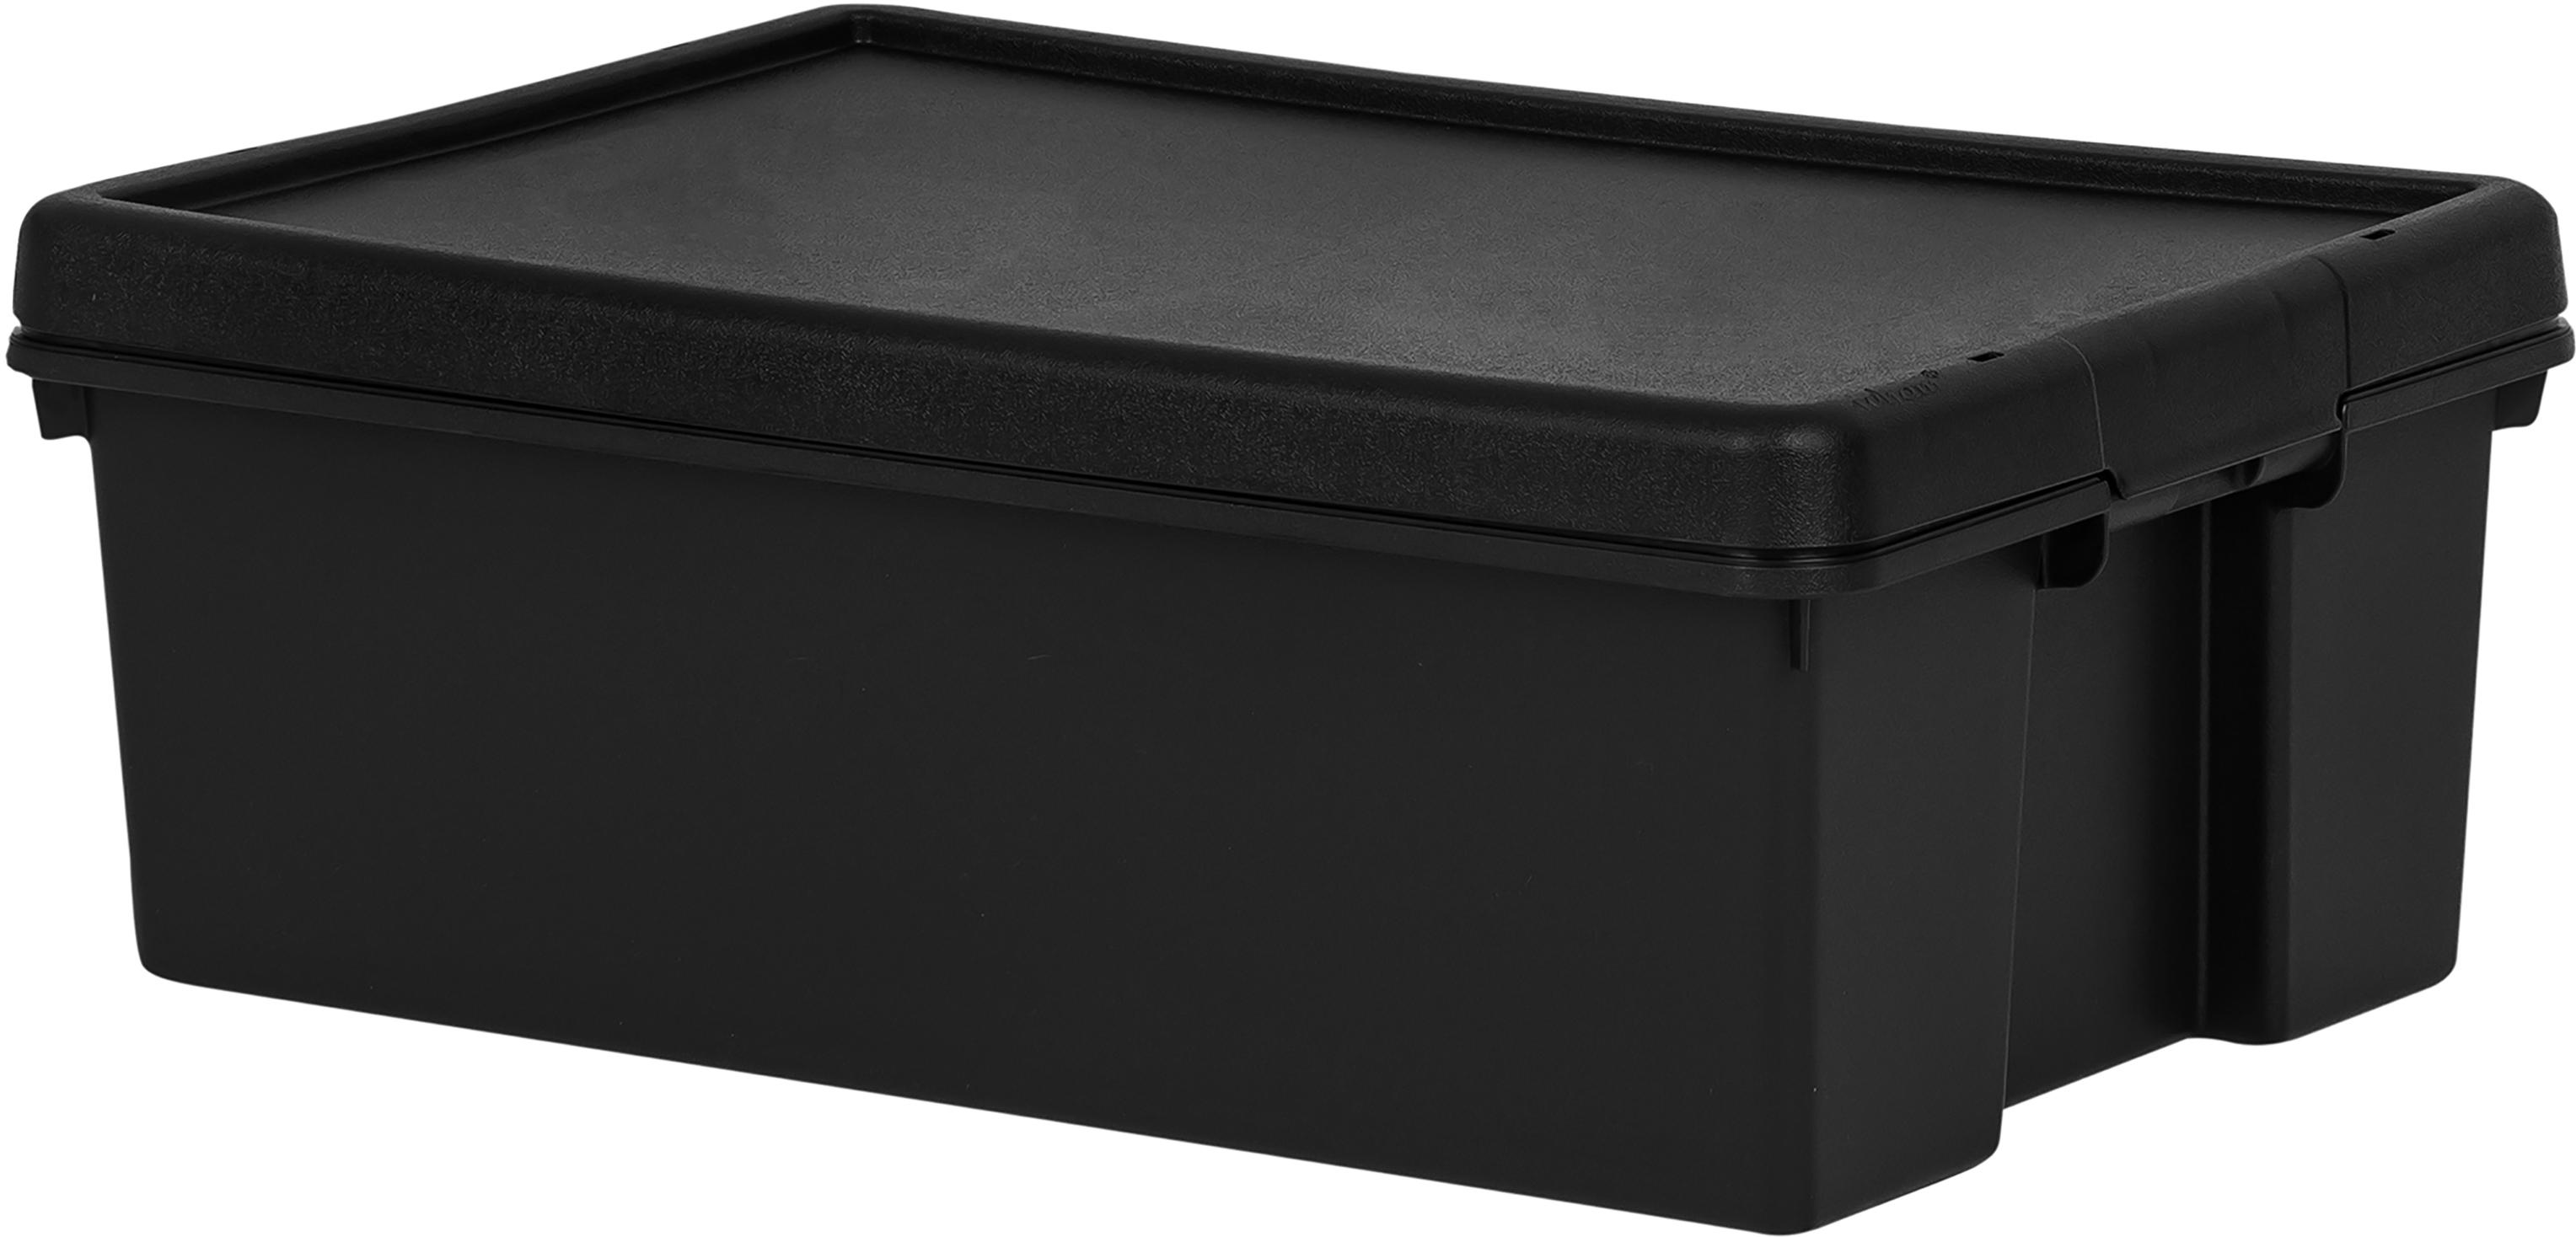 6097円 【SEAL限定商品】 2 Pack Clothes Storage Bins - Stackable Metal Frame Box Foldable Li